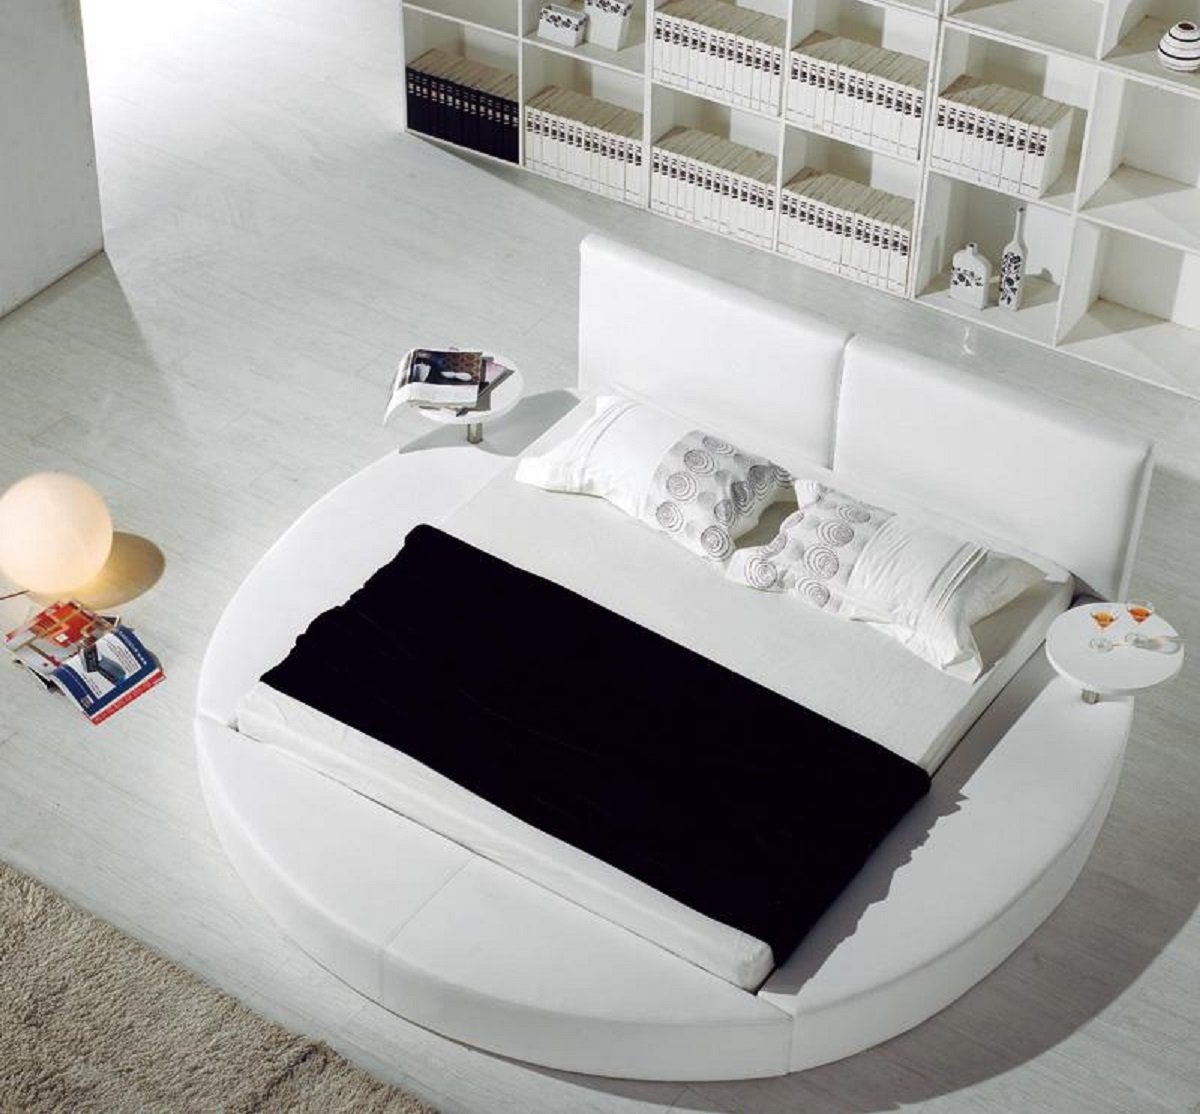 Textil Betten JVmoebel Bett Polster Rundes Rund Design Moderne Stoff Bett Luxus